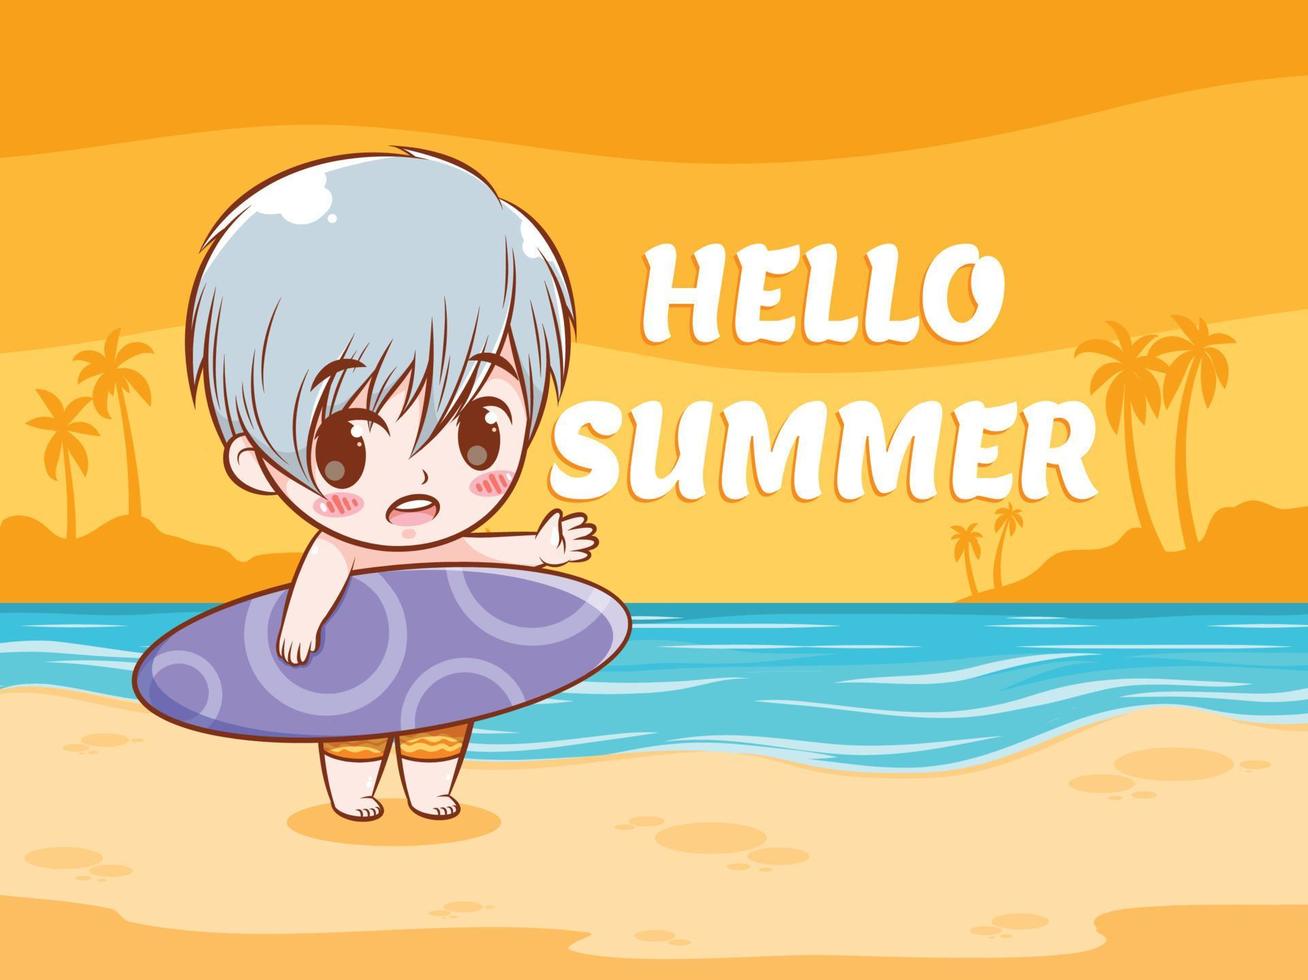 een schattige jongen zegt hallo zomer. zomer groet concept illustratie. vector